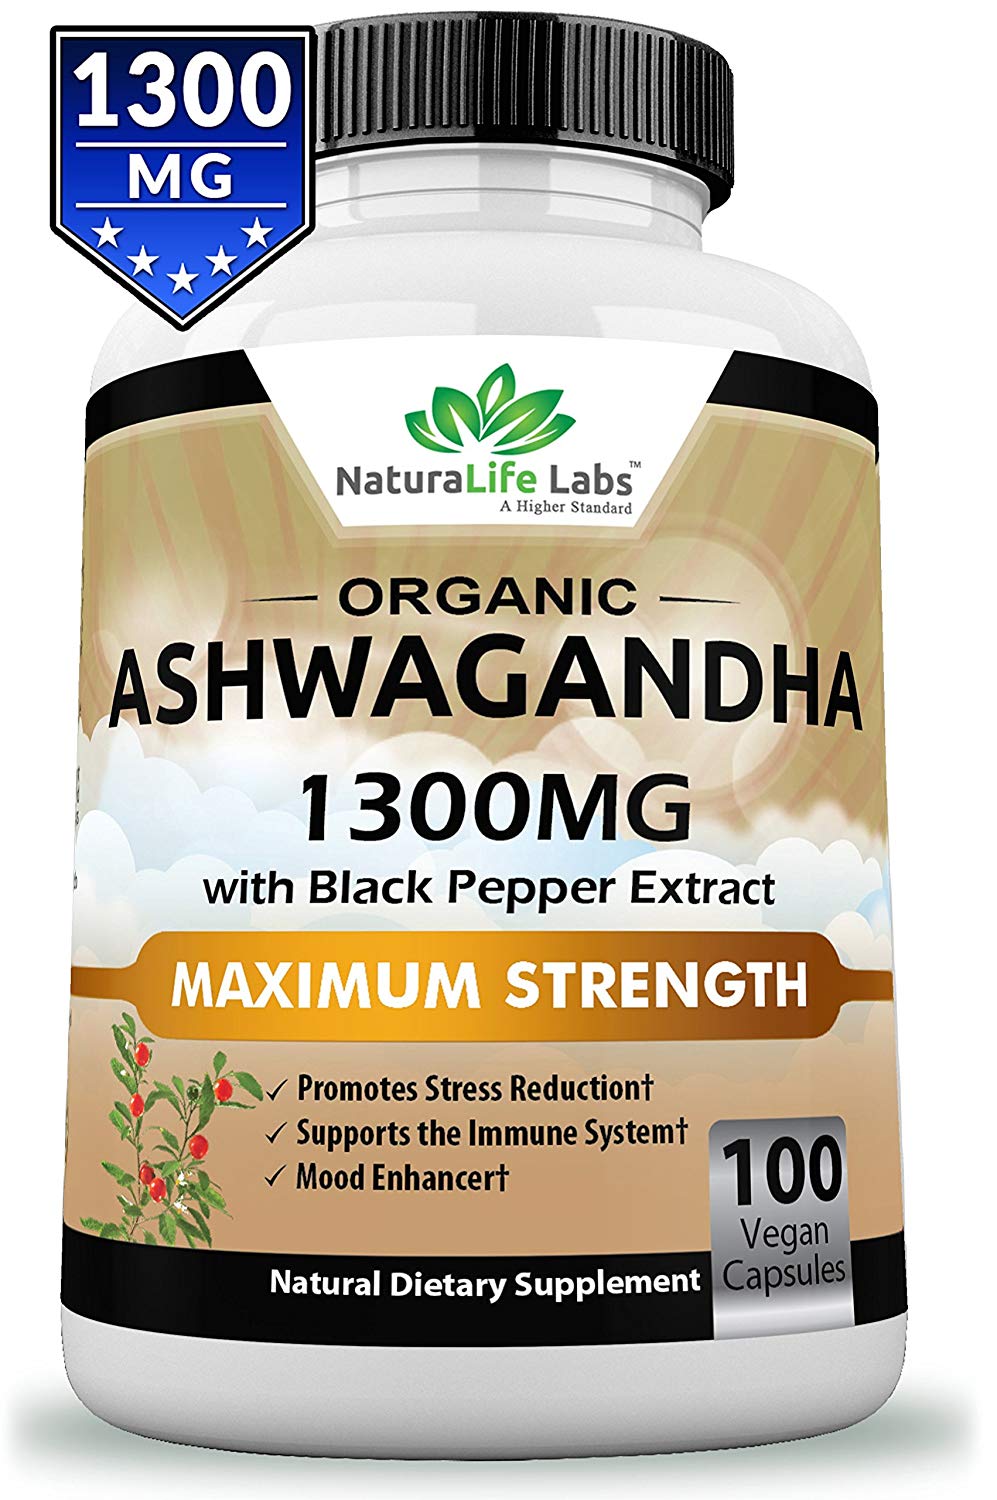 can i take 1600 mg of ashwagandha